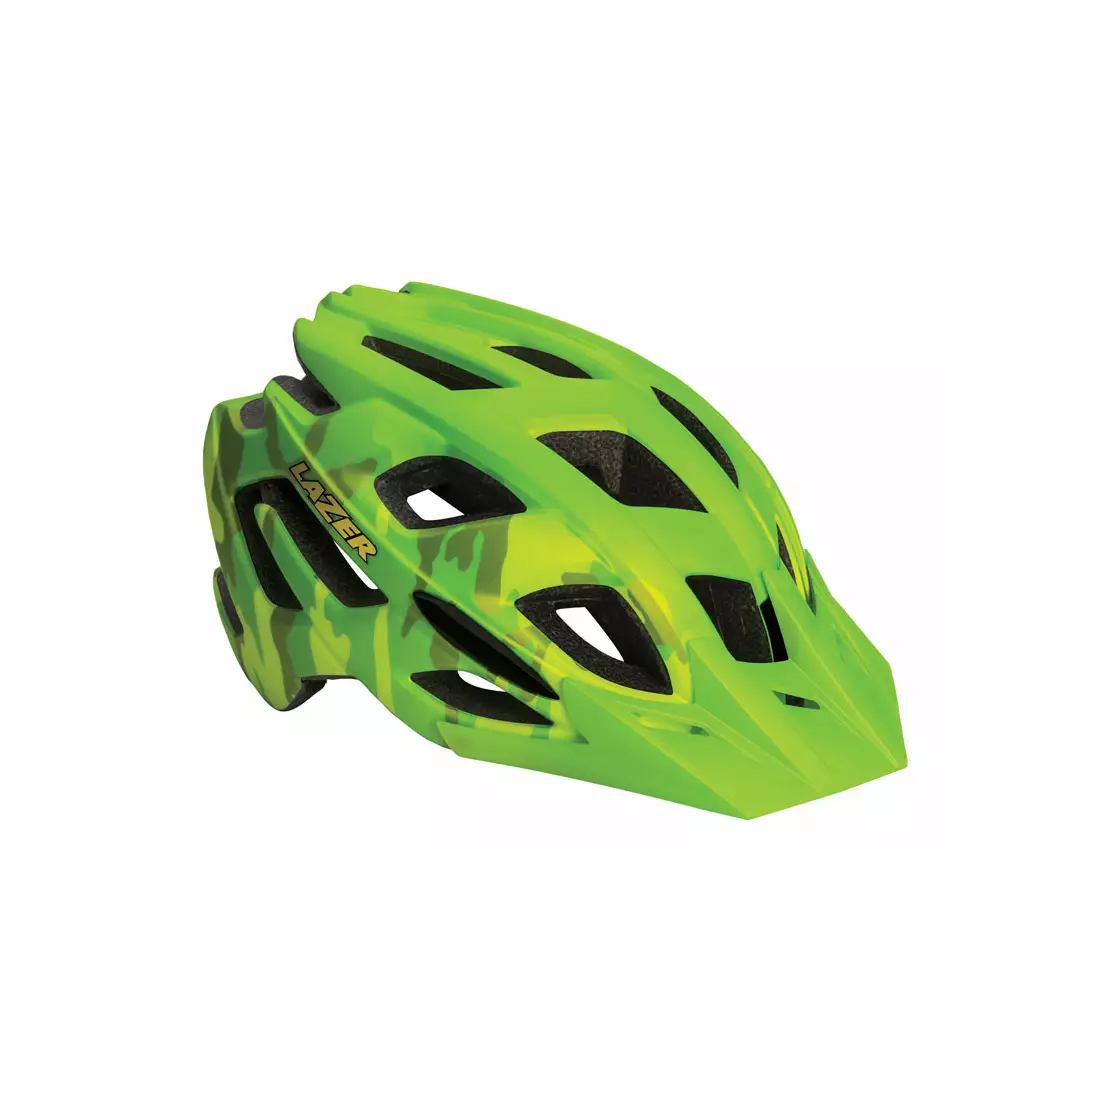 LAZER - ULTRAX MTB kerékpáros sisak, színe: villanófényes terepszínű zöld